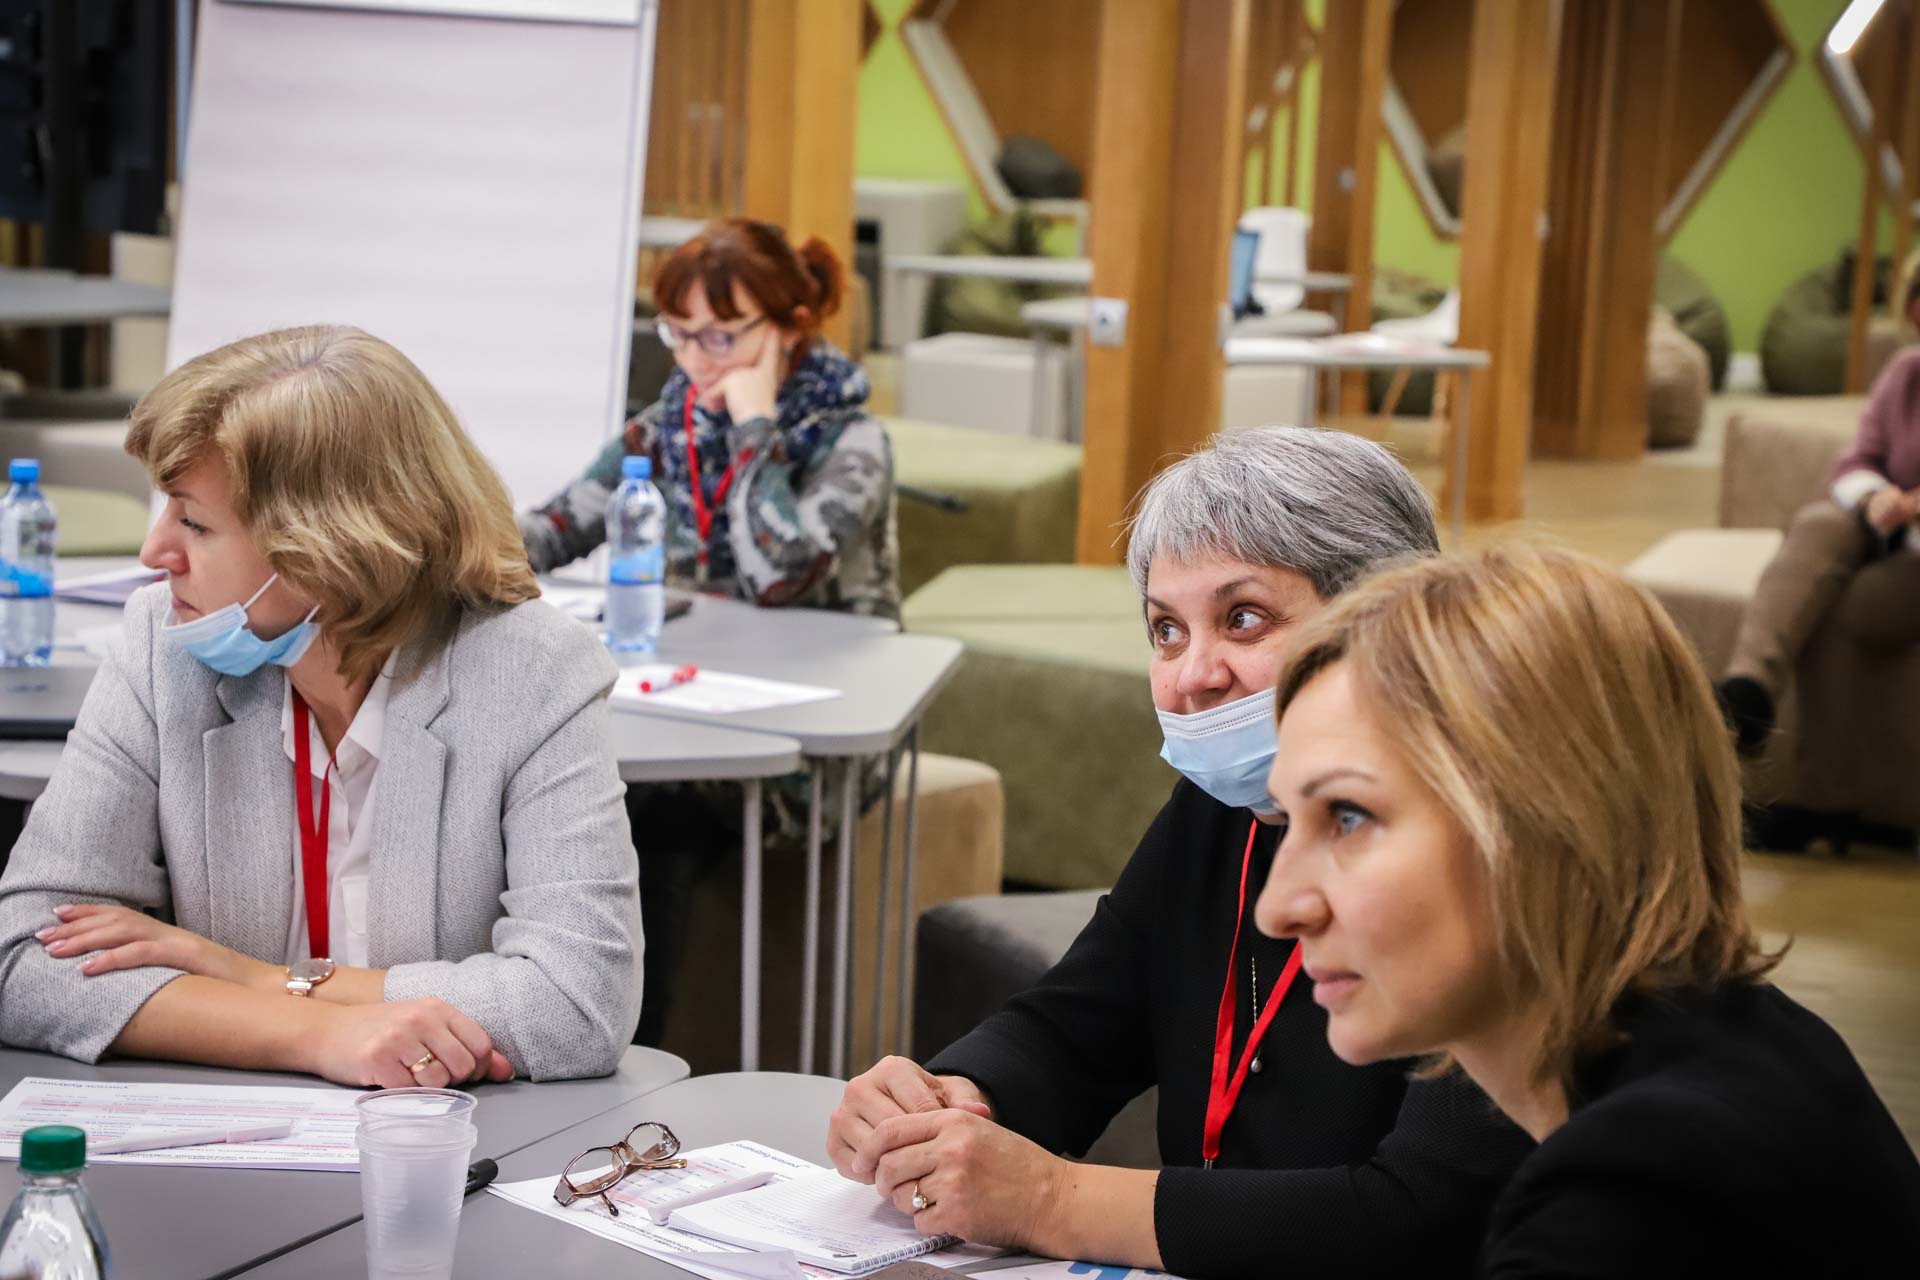  В Мининском университете стартовала программа дополнительного образования «Лидерство в образовании: командная траектория»